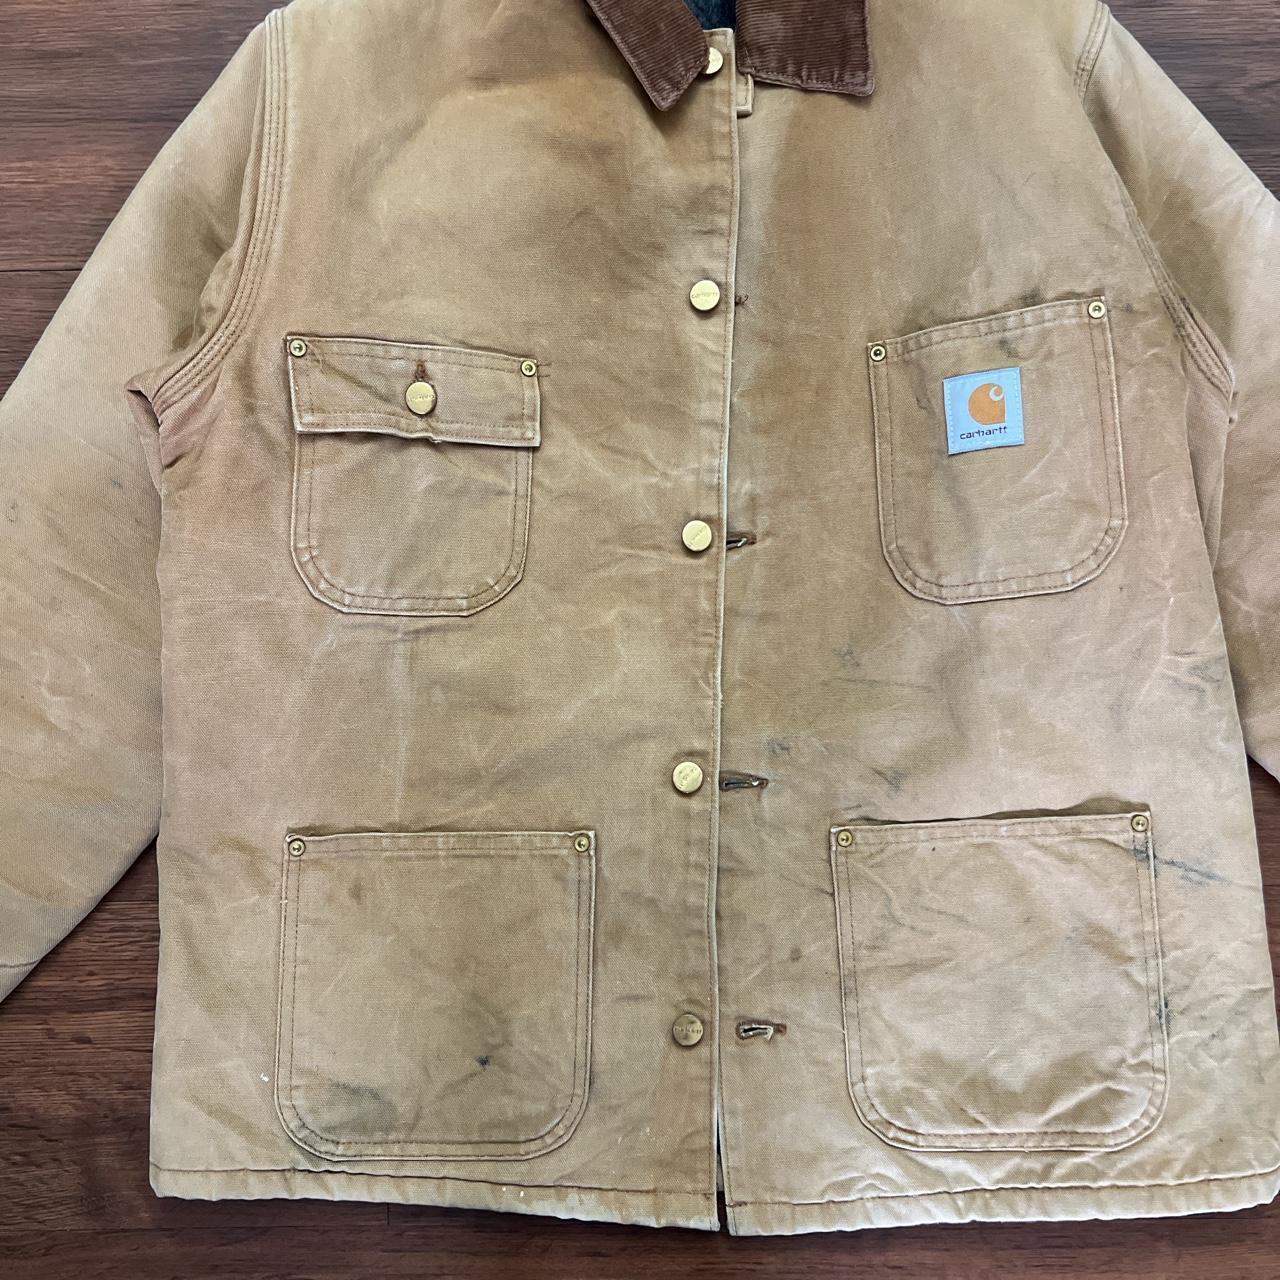 Vintage Carhartt chore jacket. #VintageCarhartt... - Depop